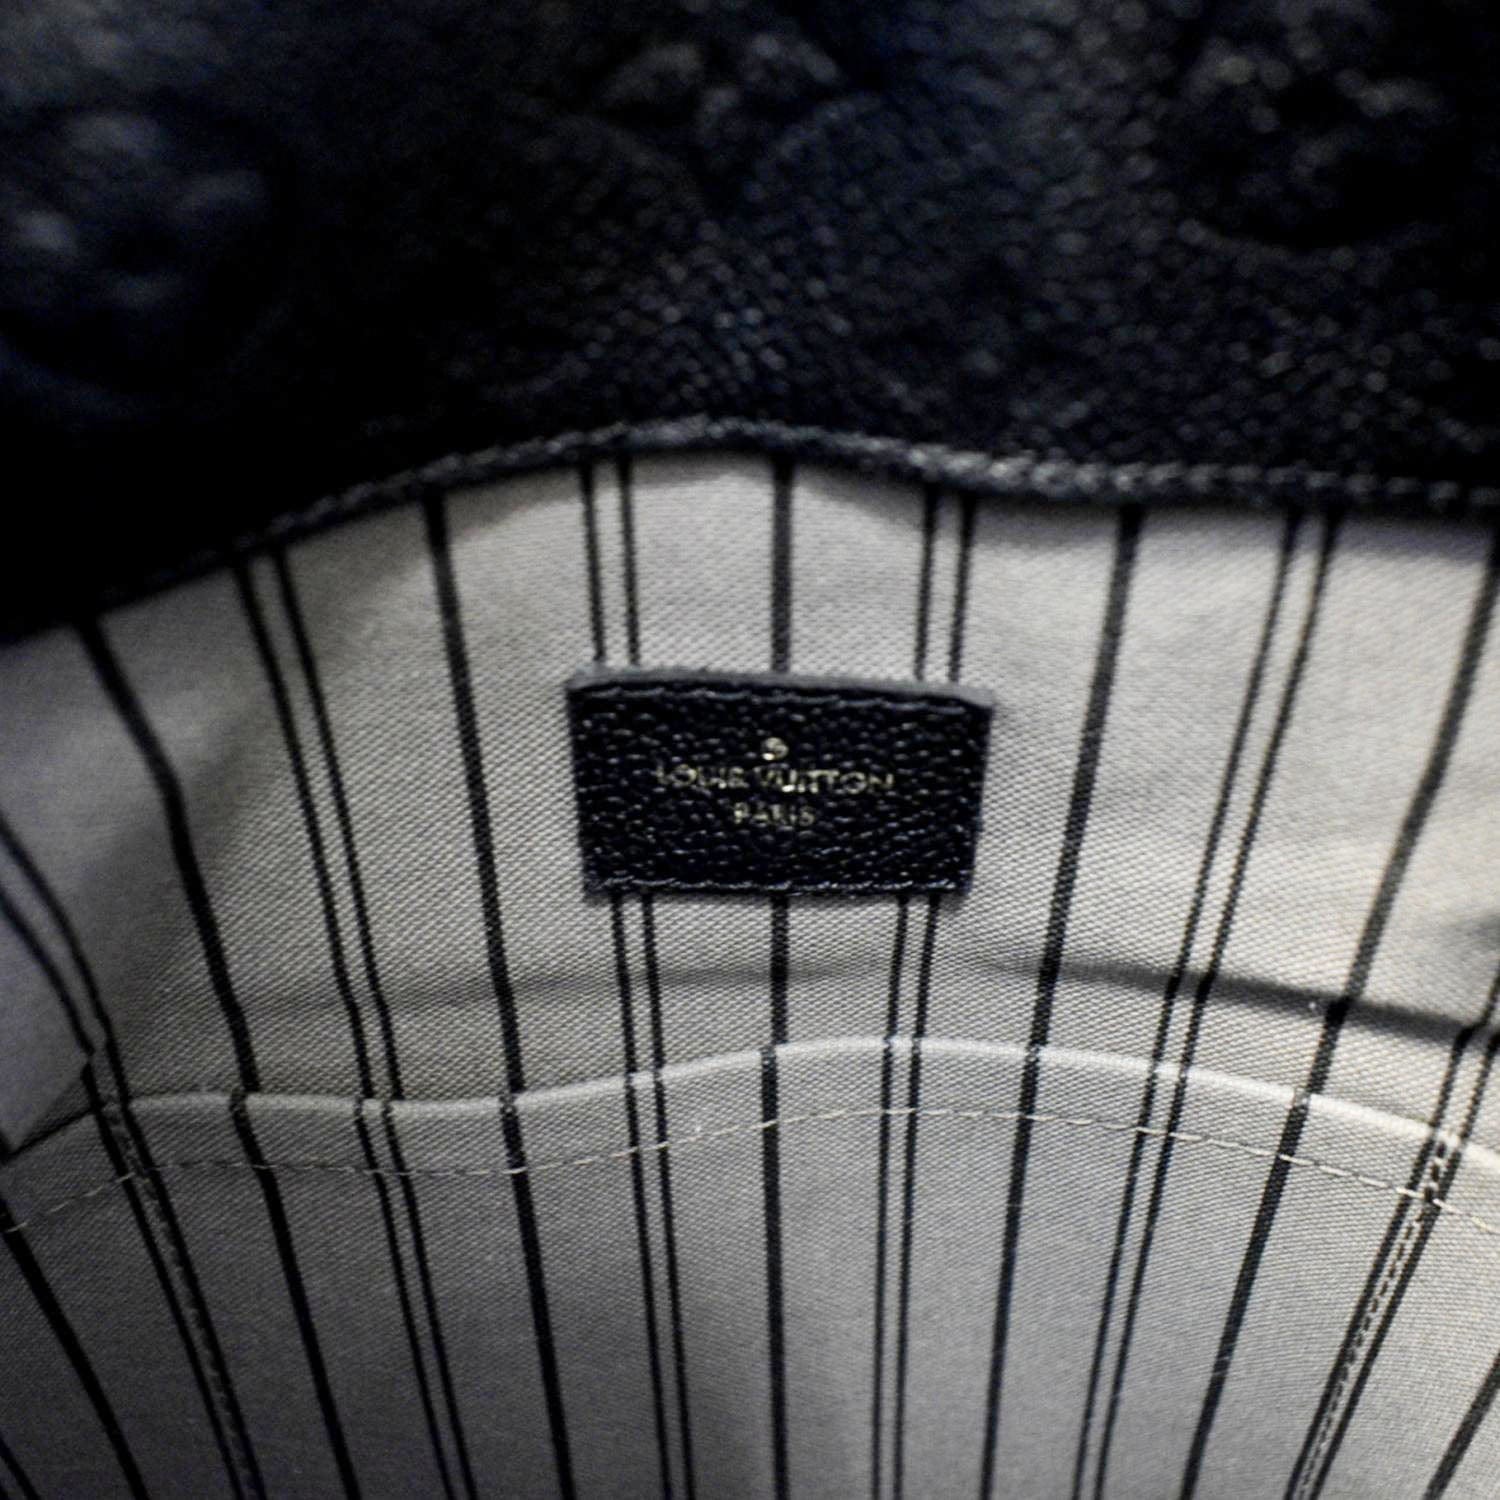 Louis Vuitton Monogram Empreinte Artsy MM - Black Hobos, Handbags -  LOU766956